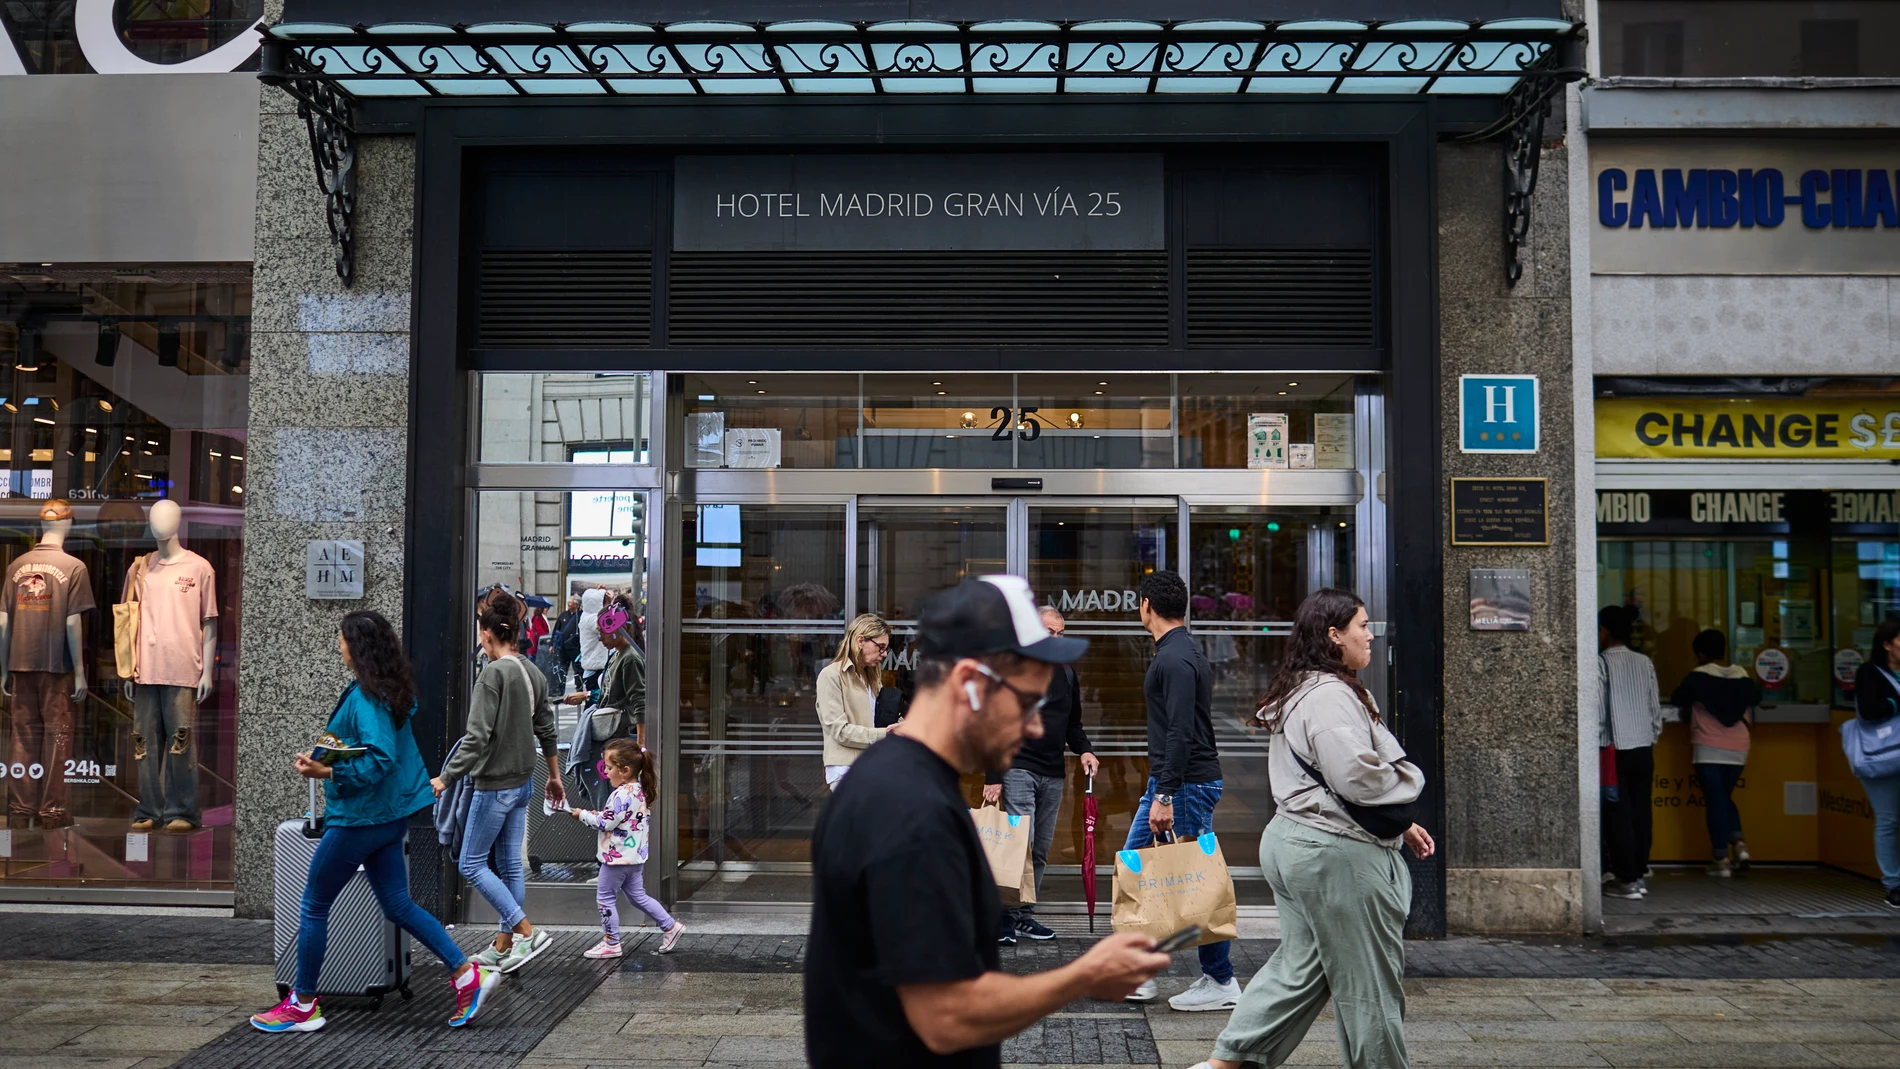 Incremento de turistas. Alta ocupacion hotelera en Madrid.  © Alberto R. Roldán / La Razón